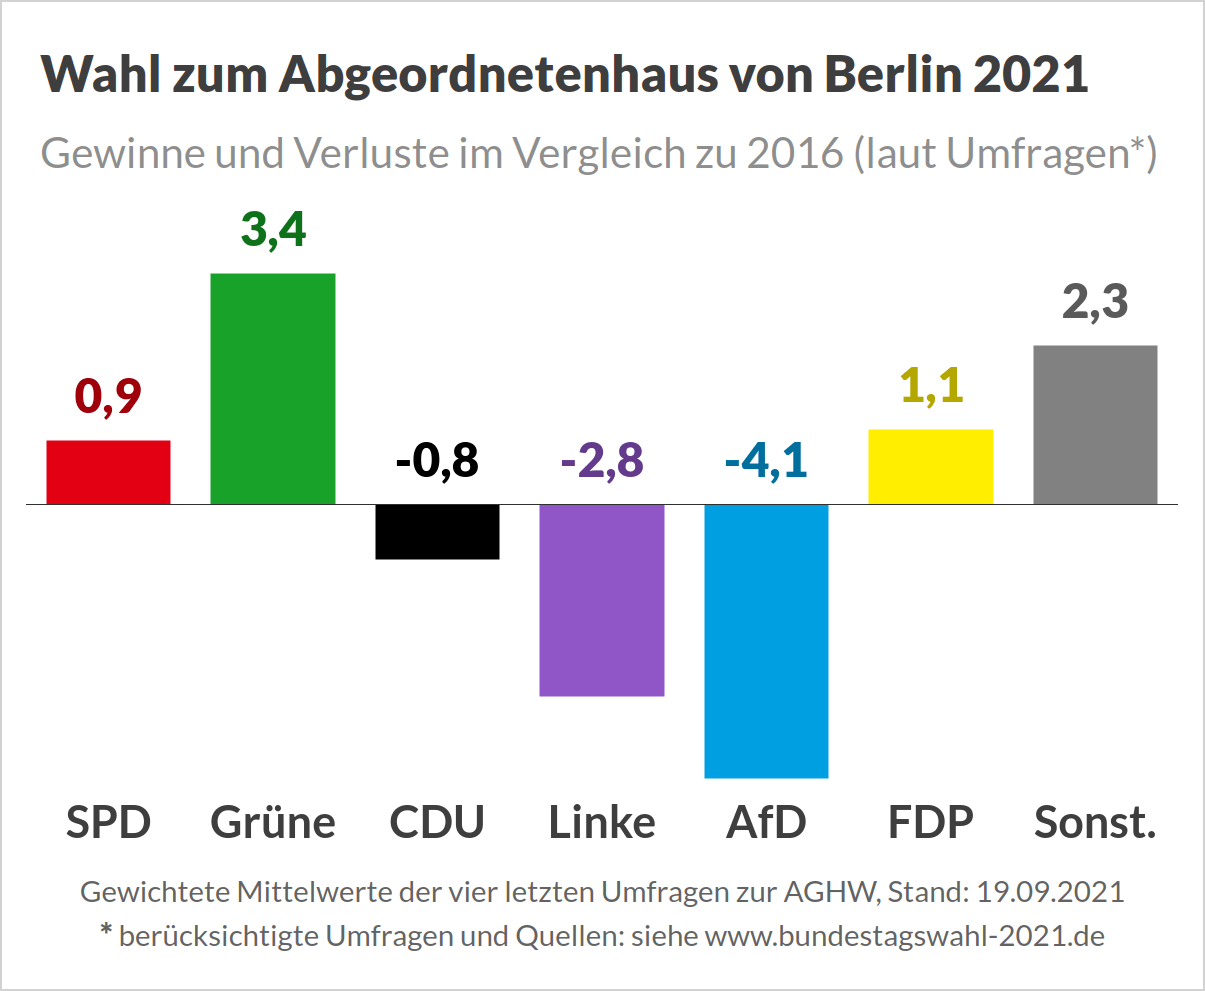 Wahl zum Abgeordnetenhaus von Berlin 2021 (Landtagswahl) - Umfragen